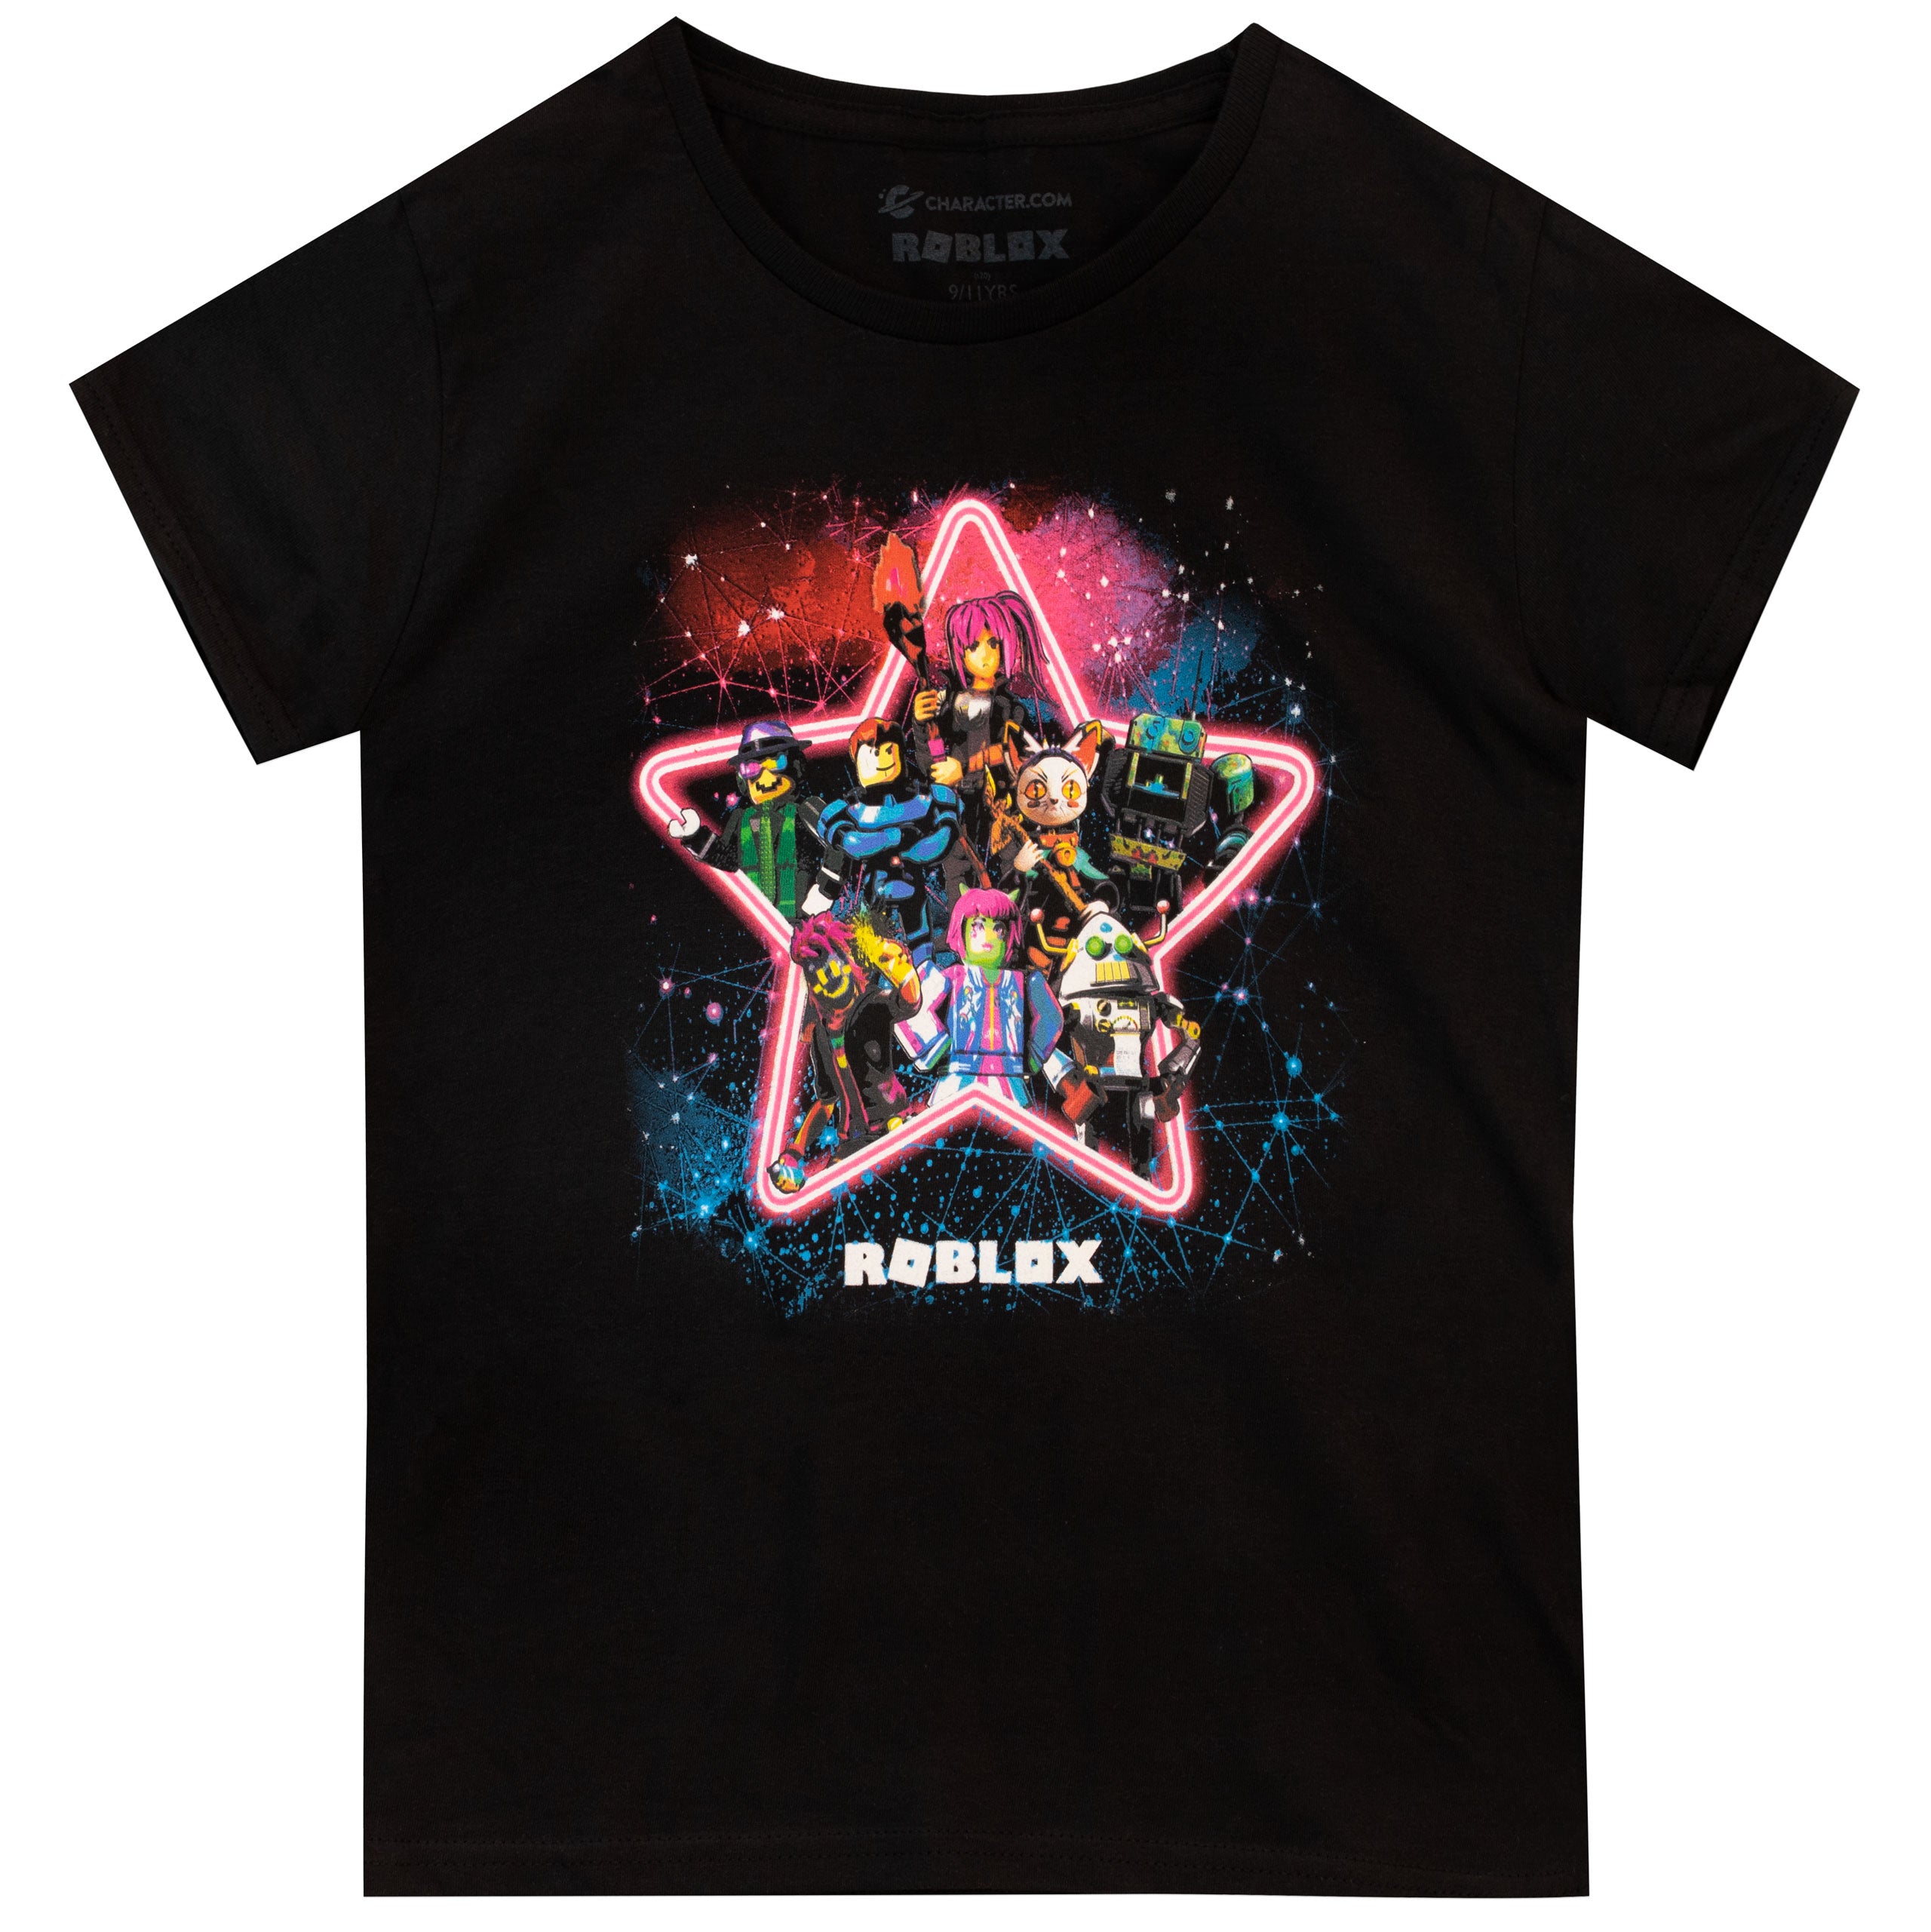 Buy Girls Roblox T Shirt Kids Character Com Official Merchandise - roblox princess shirt